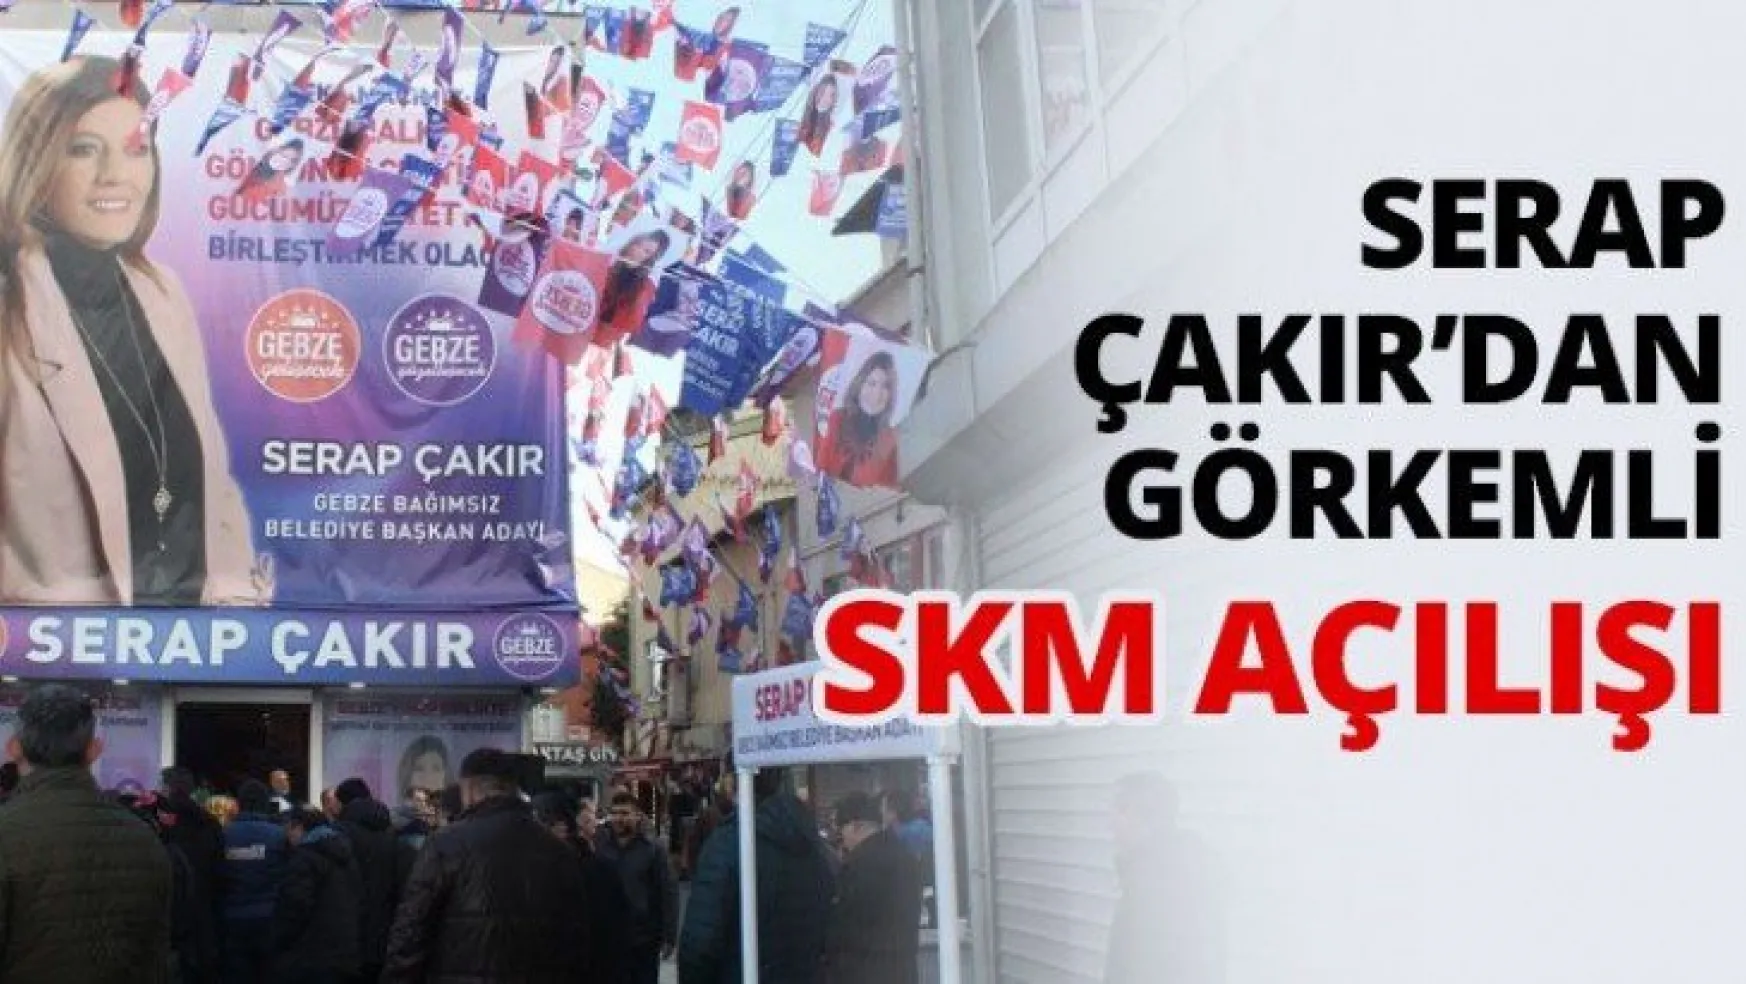 Serap Çakır'dan görkemli SKM açılışı